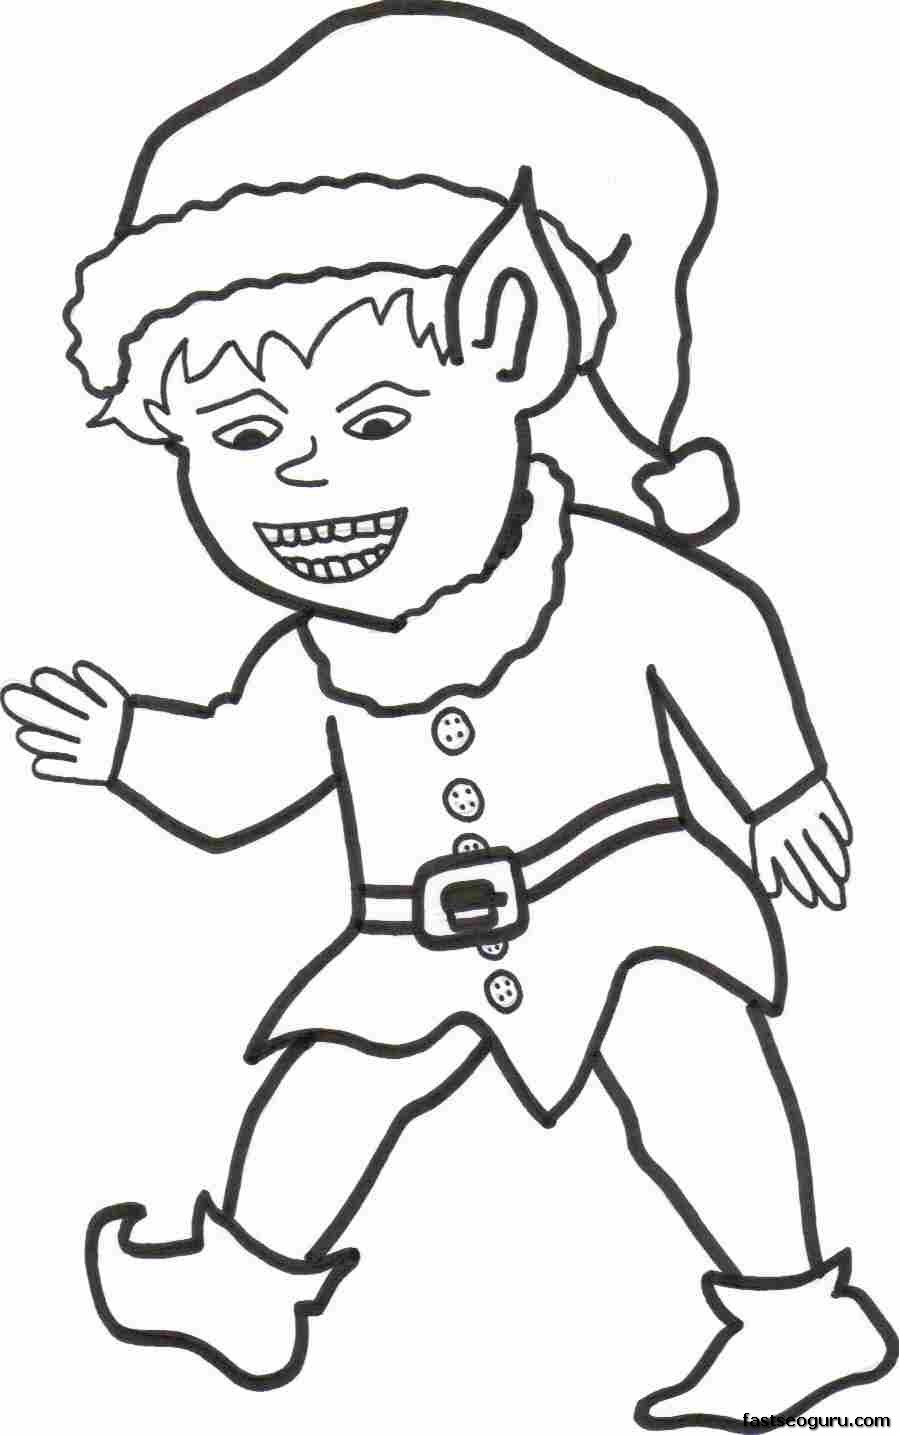 Printable Christmas happy Elf boy coloring page